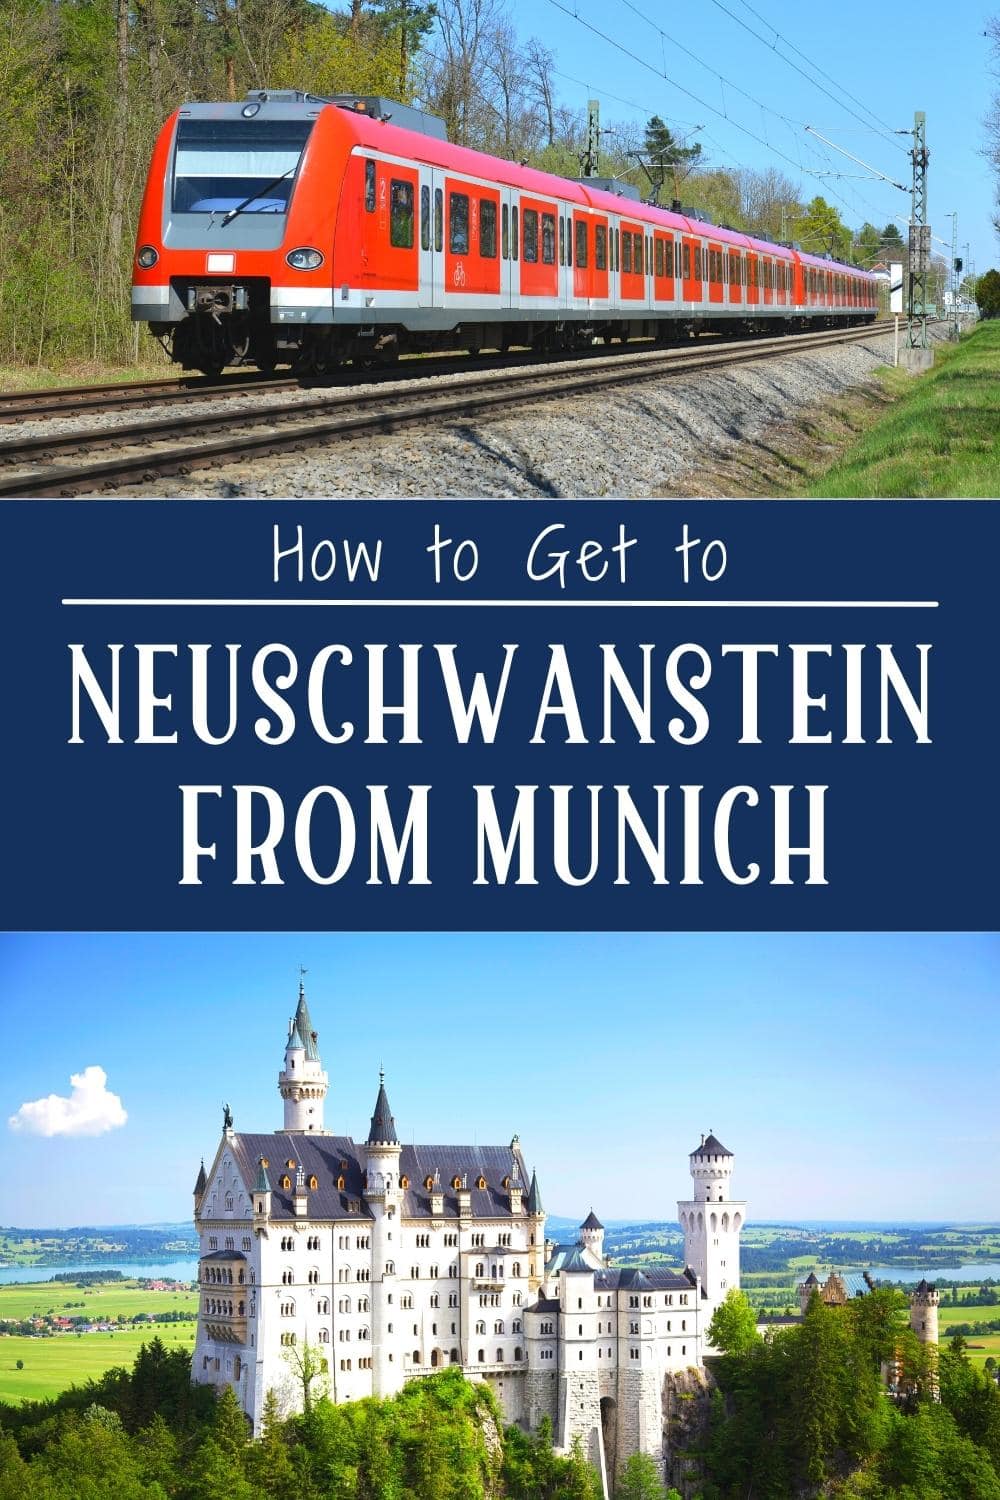 How to Get to Neuschwanstein Castle from Munich